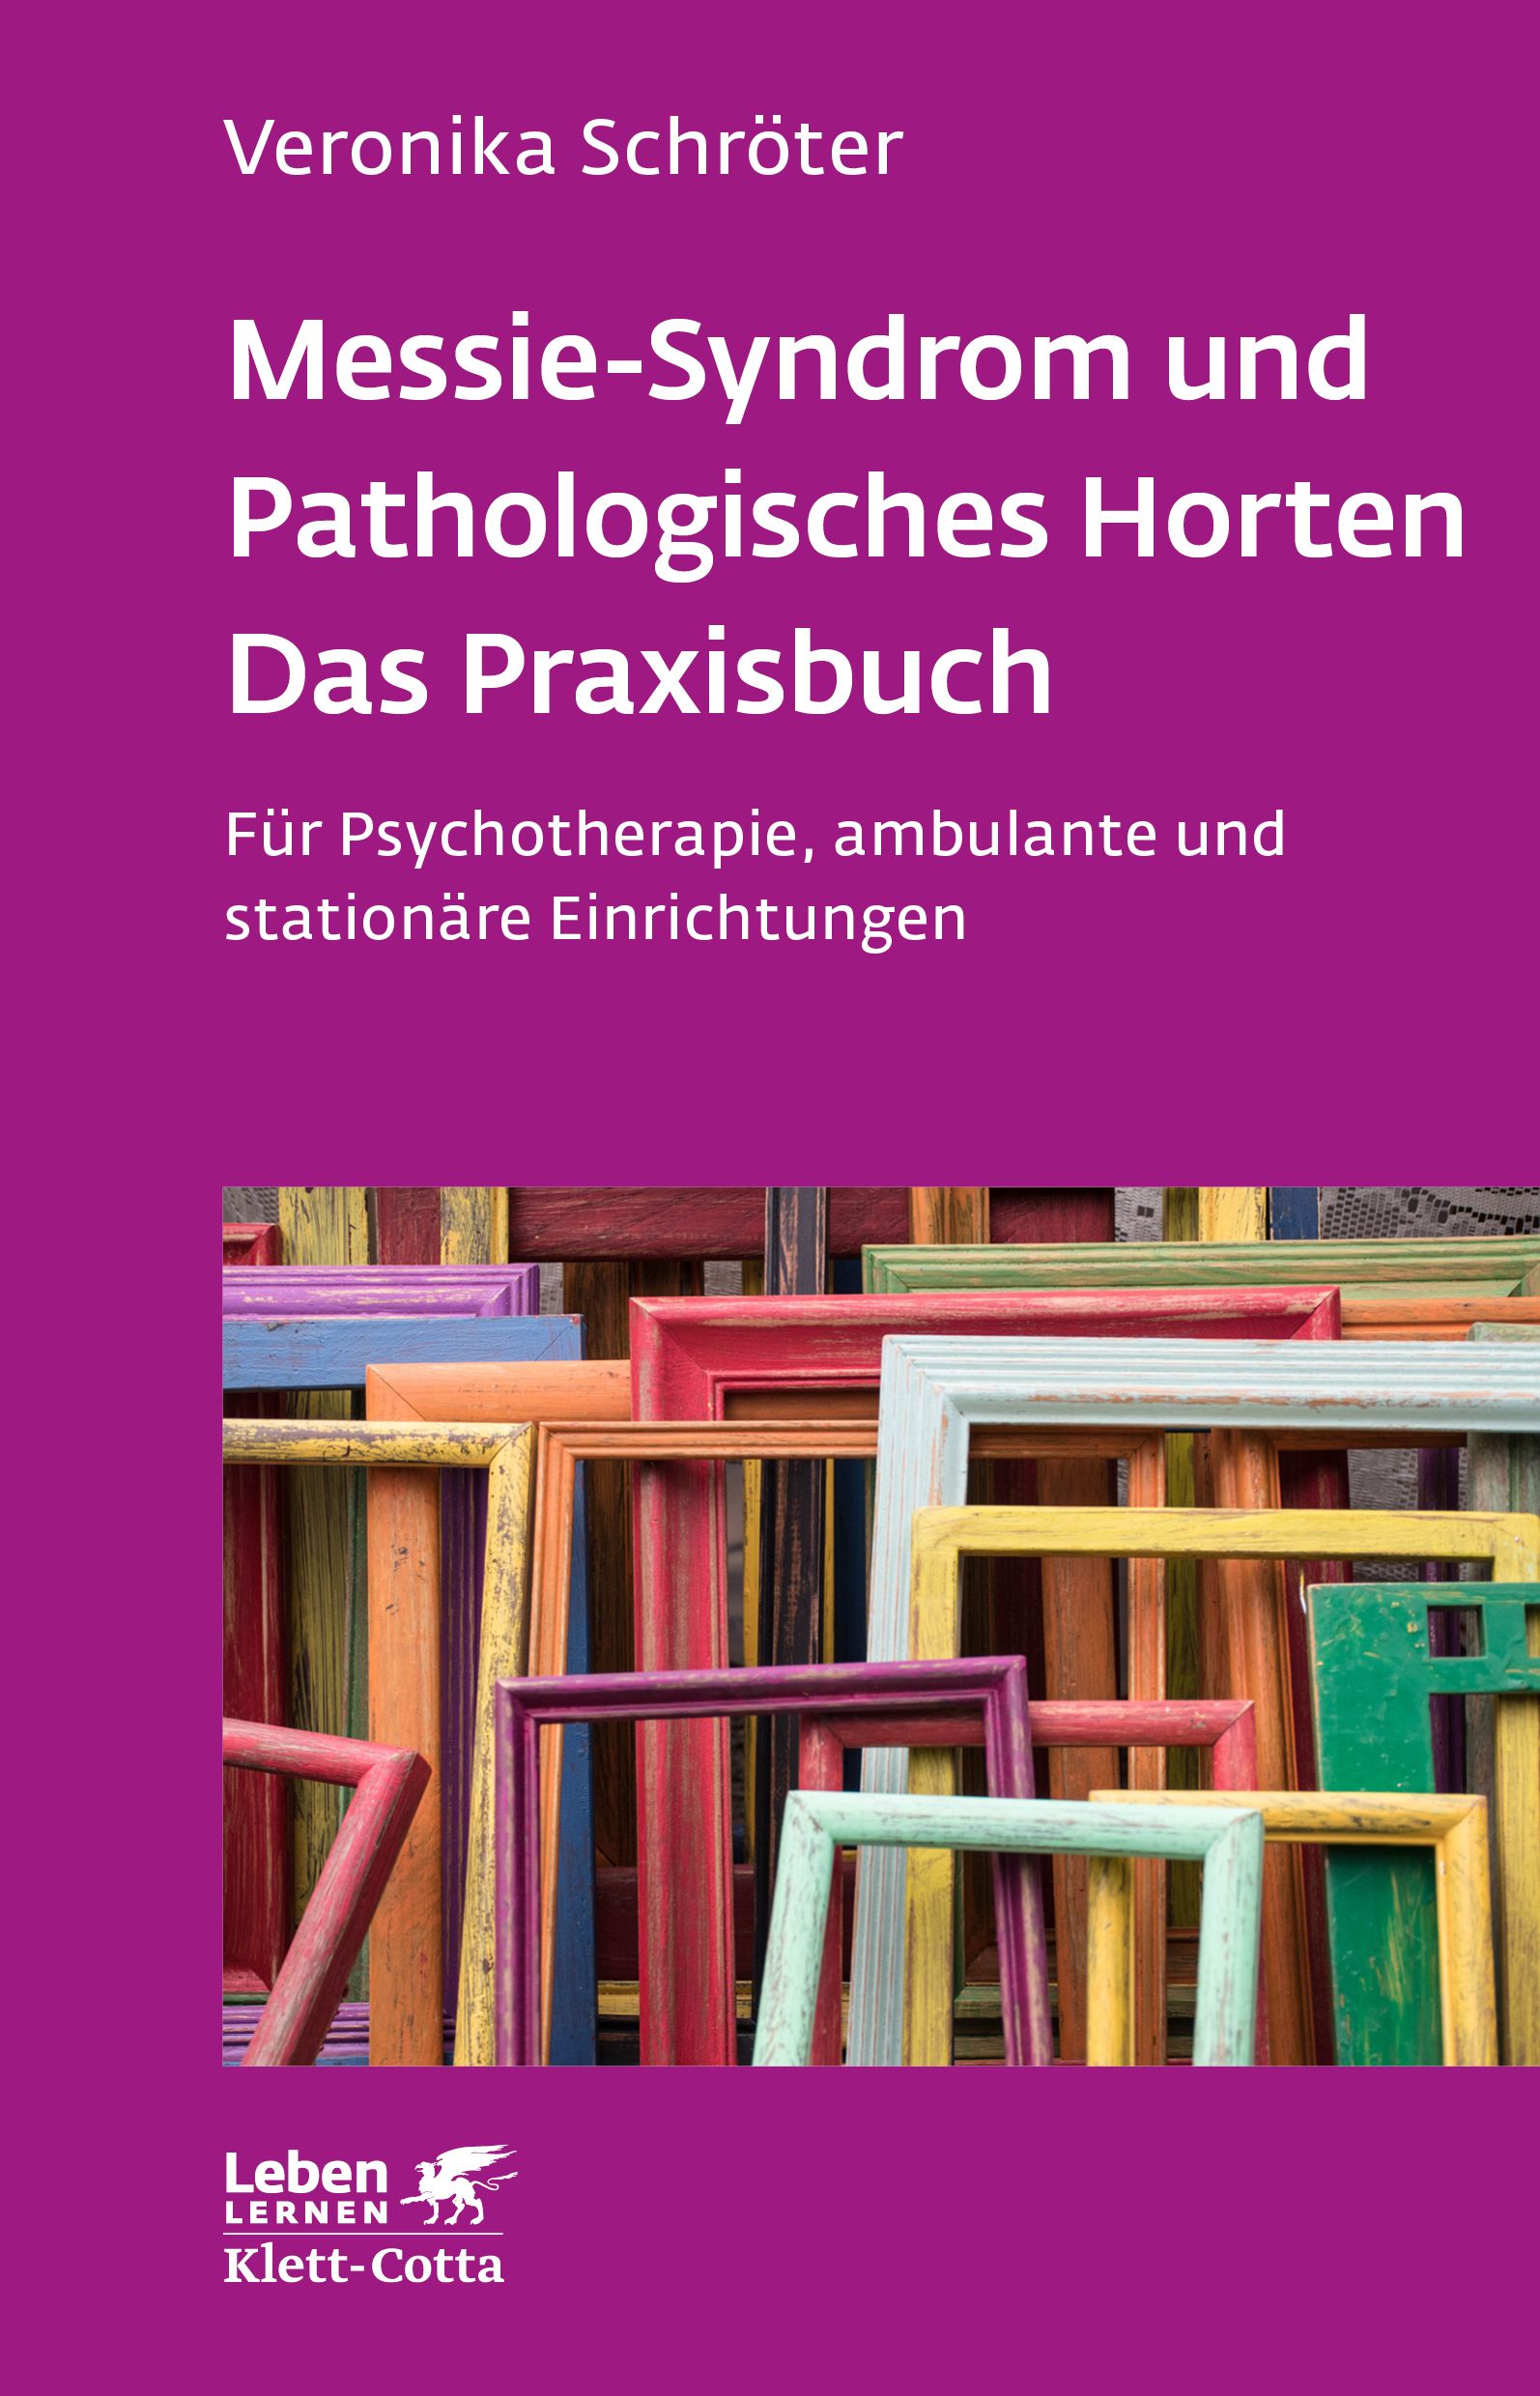 Messie-Syndrom und Pathologisches Horten – Das Praxisbuch (Leben Lernen, Bd. 332)